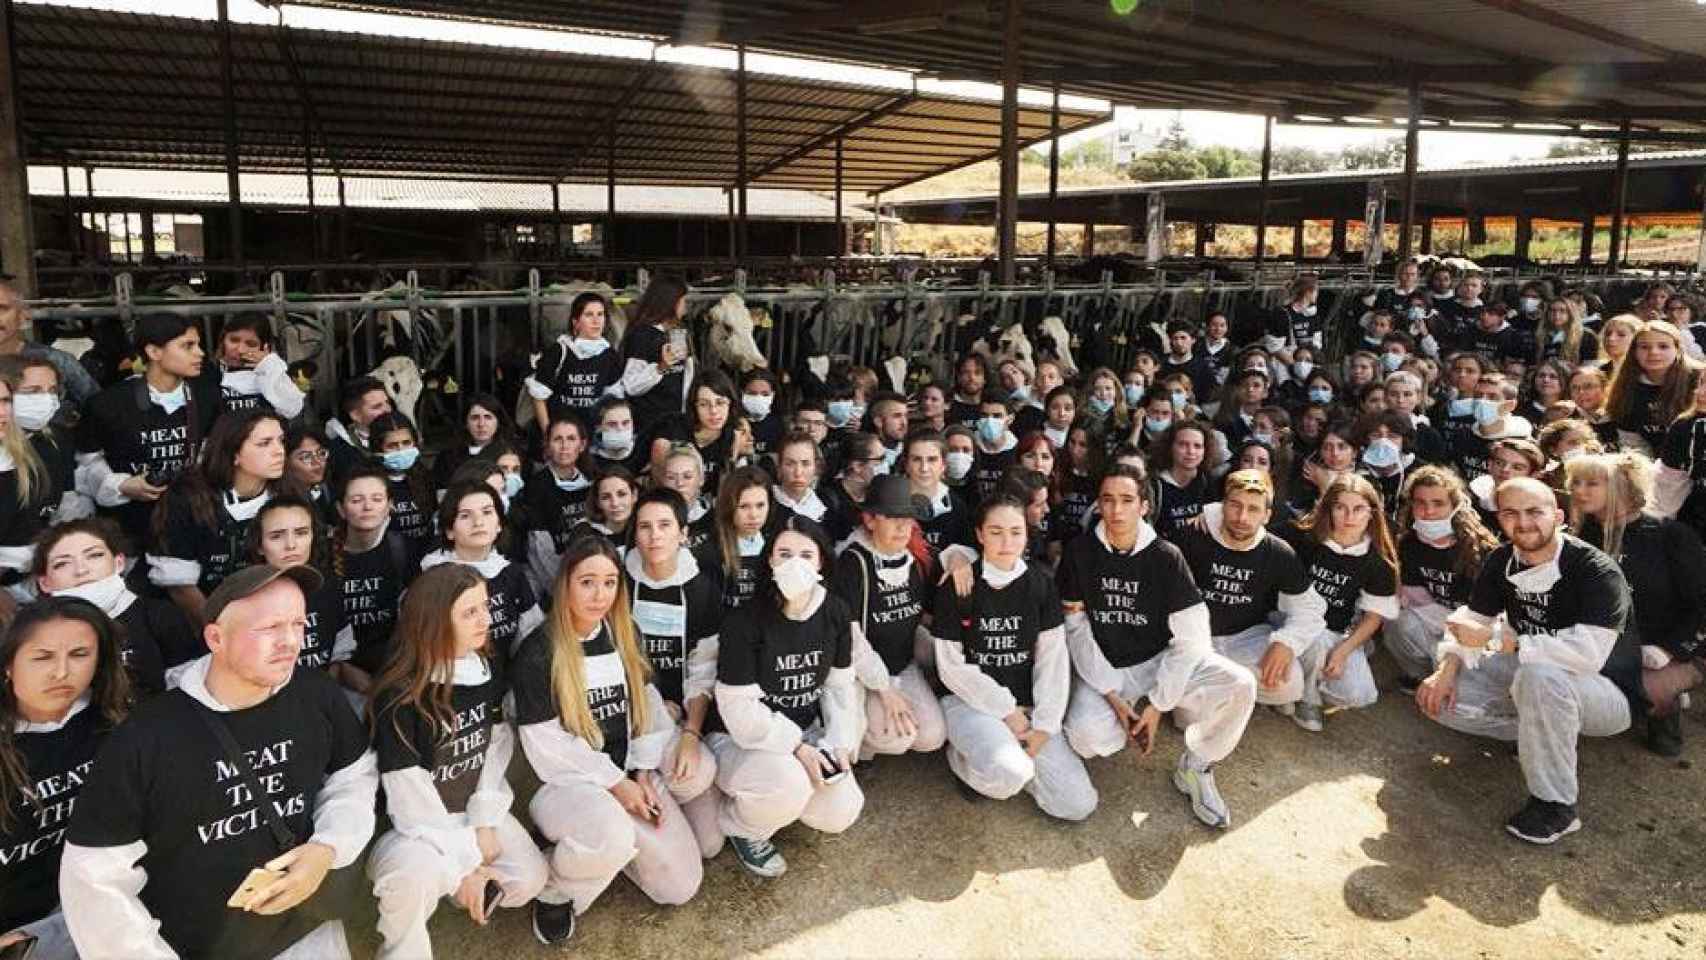 Grupo de animalistas 'Meat the victims' en una actuación en Cataluña / CG